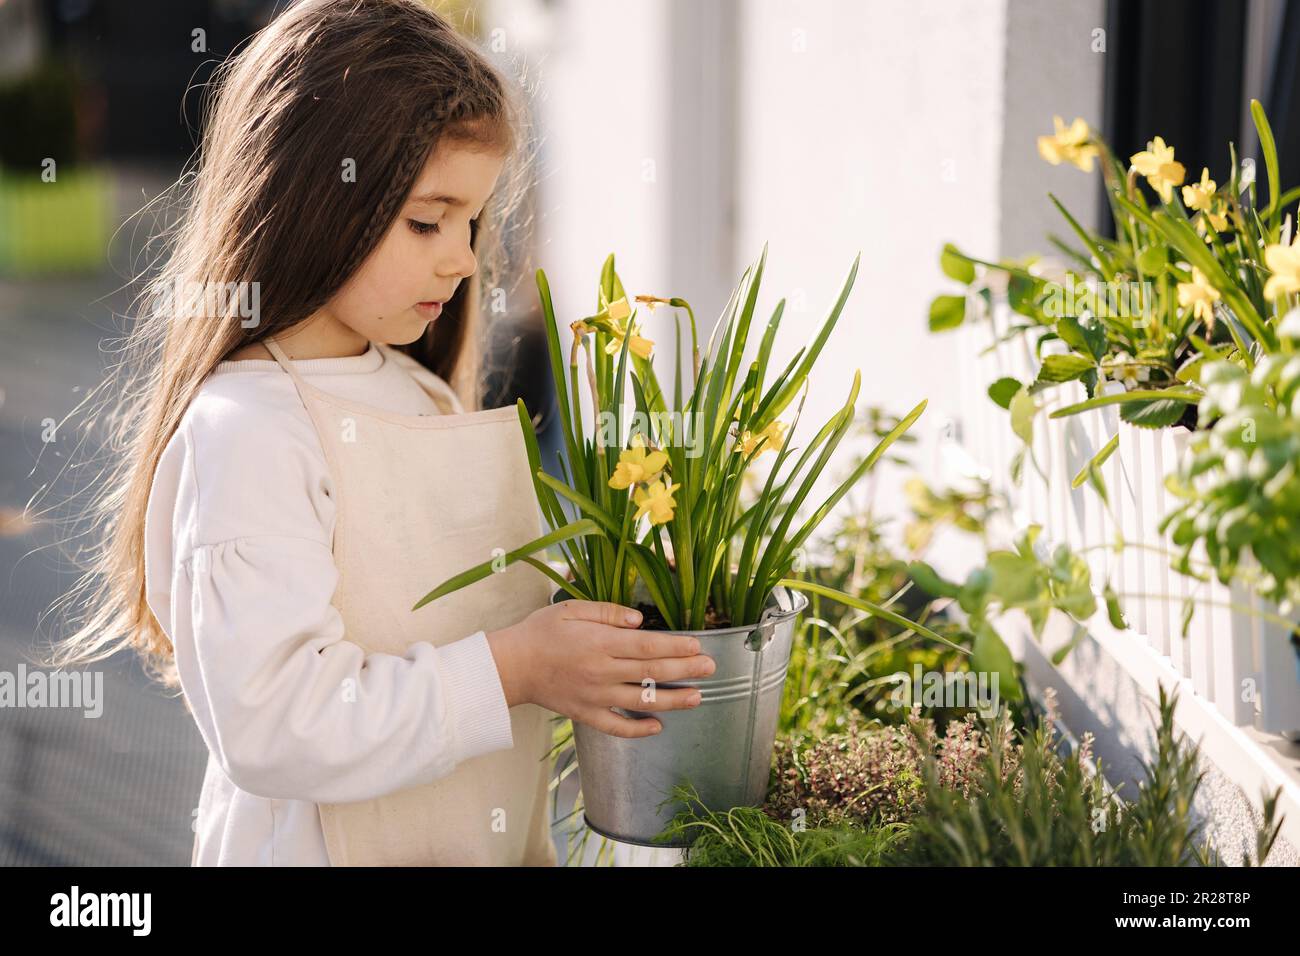 Portrait eines niedlichen kleinen Mädchens, das Narzissen in einem Metalleimer neben dem Blumenbeet hält. Gartenarbeit im Freien Stockfoto